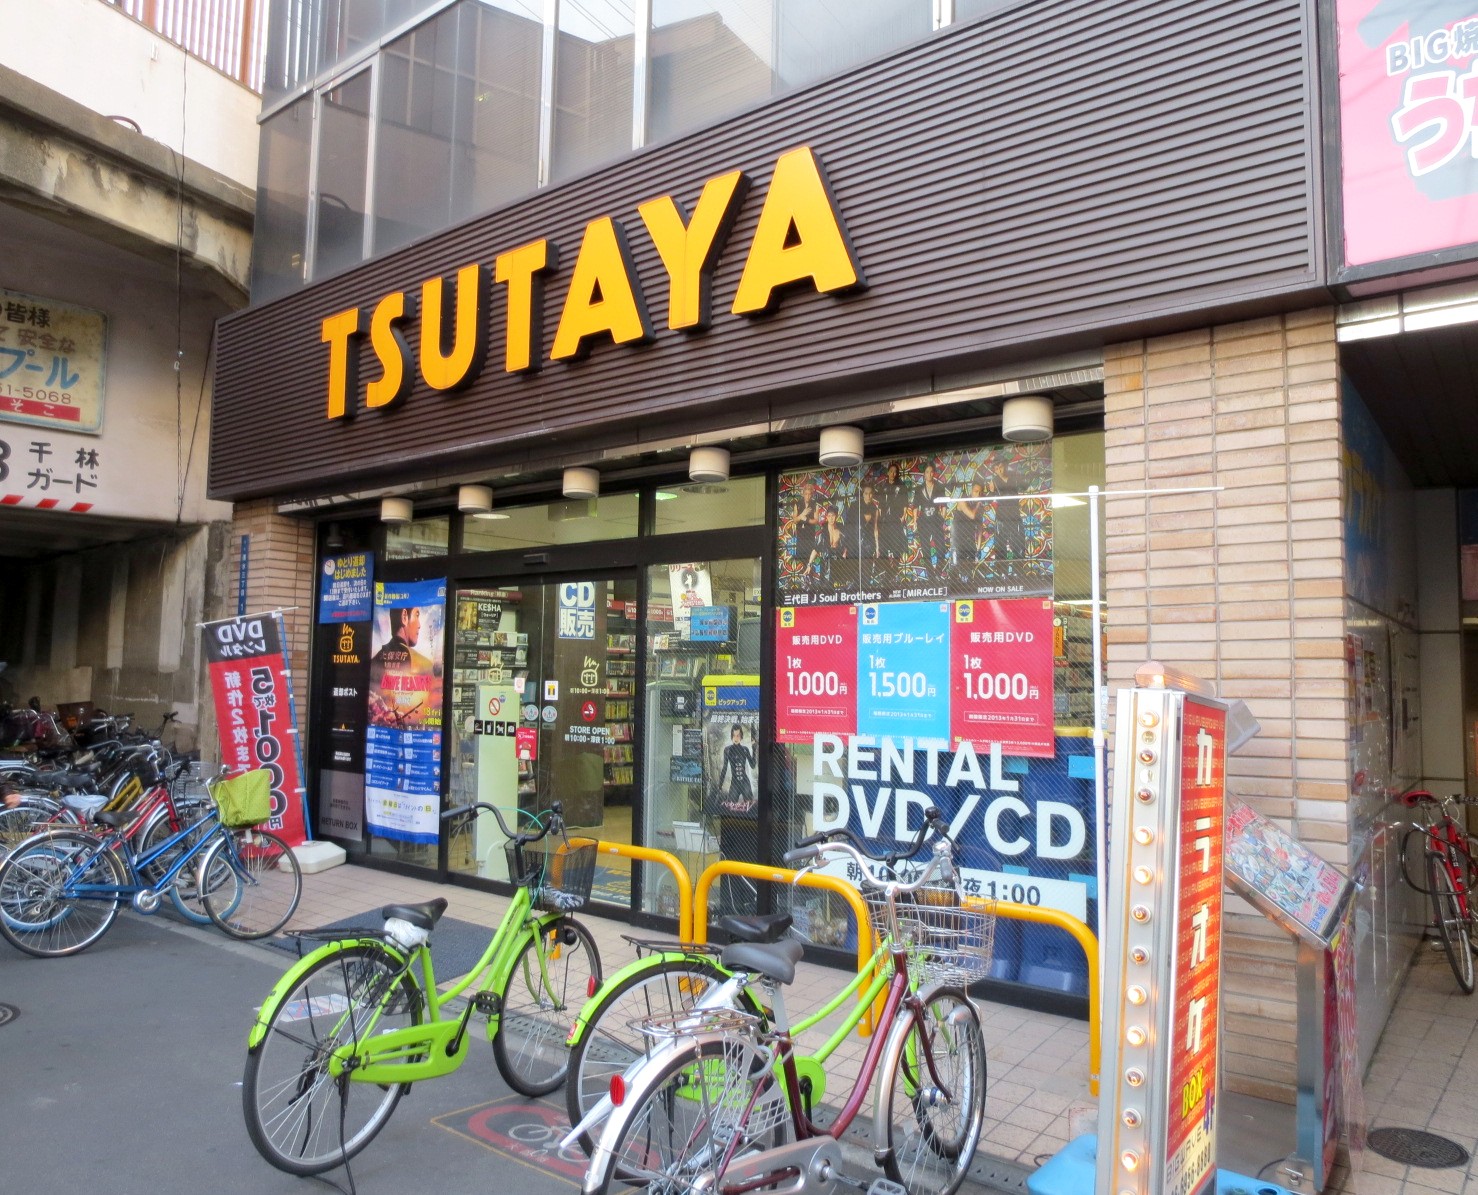 Rental video. TSUTAYA Sembayashi shop 1253m up (video rental)